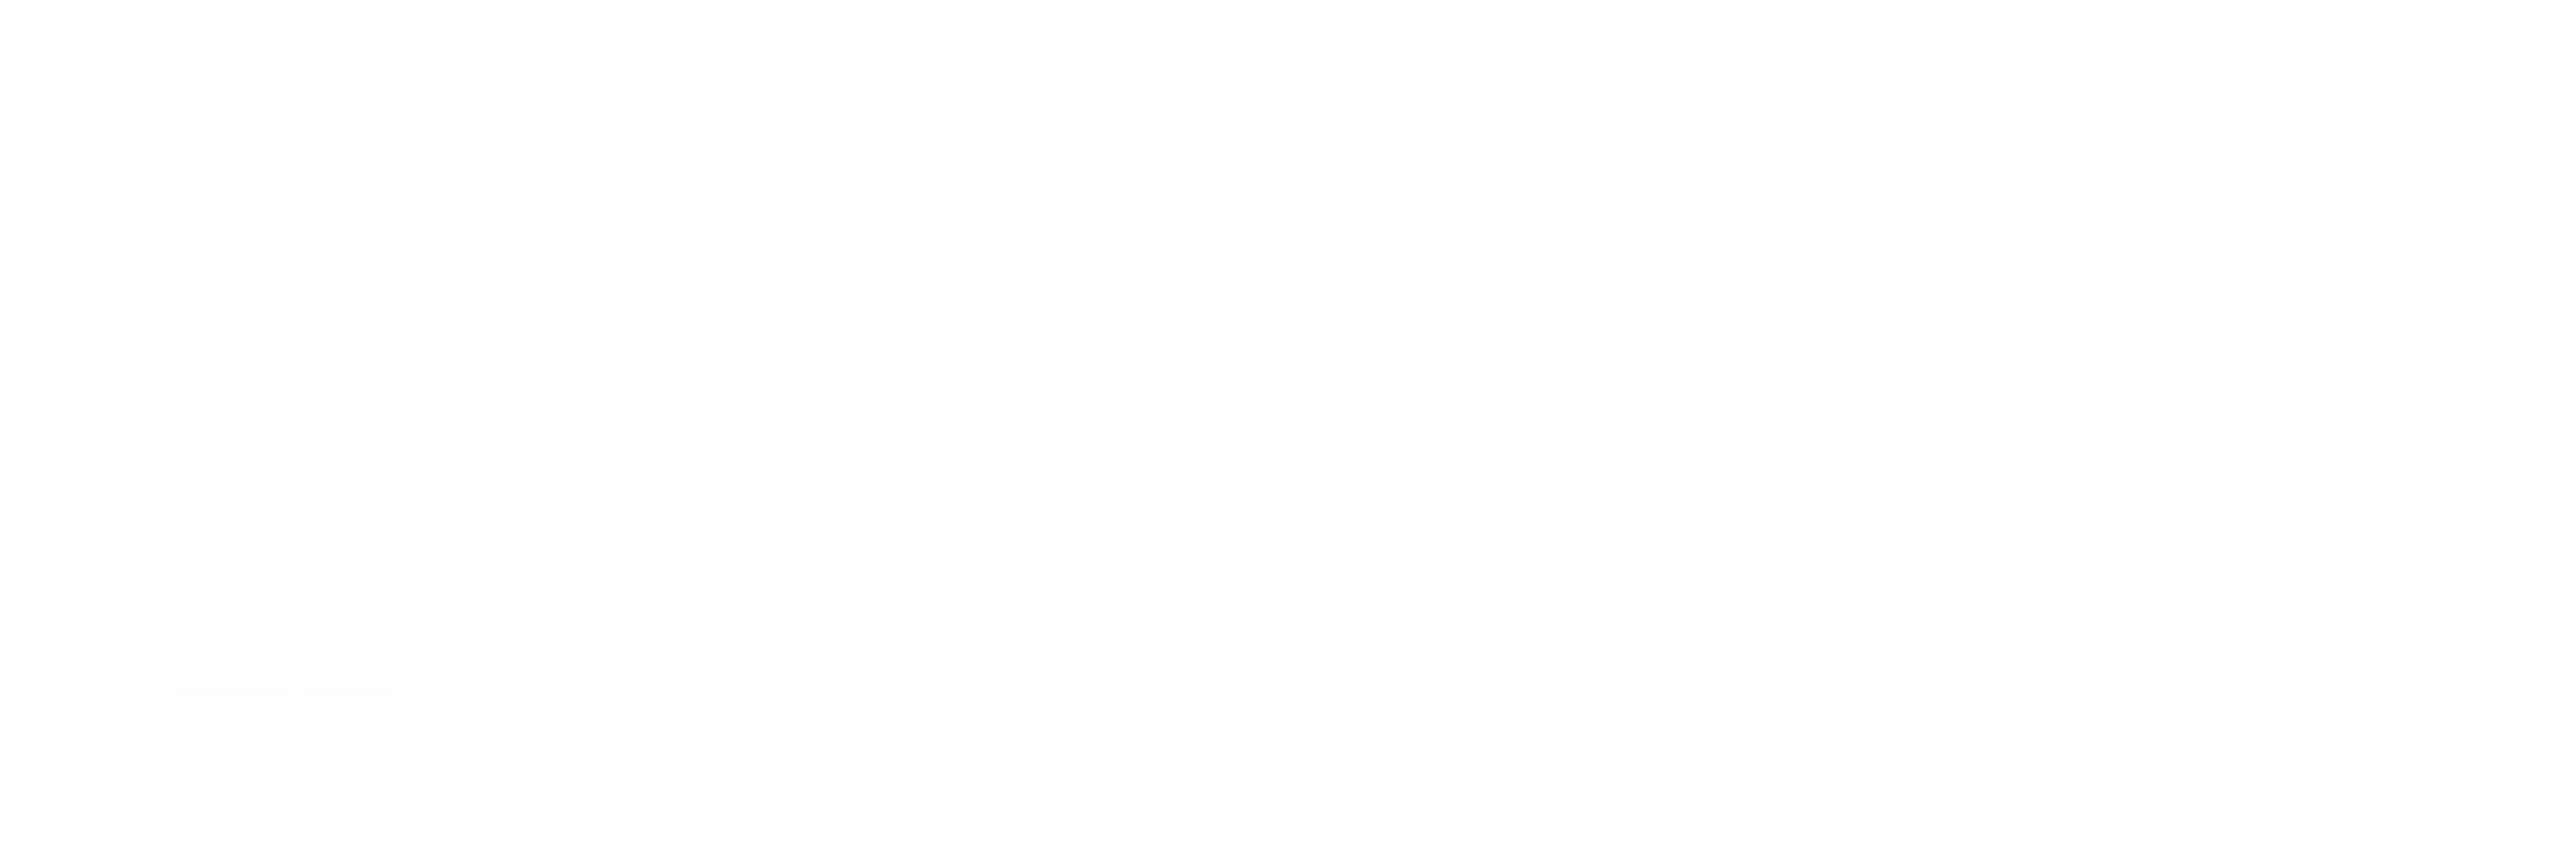 empirevaults.com